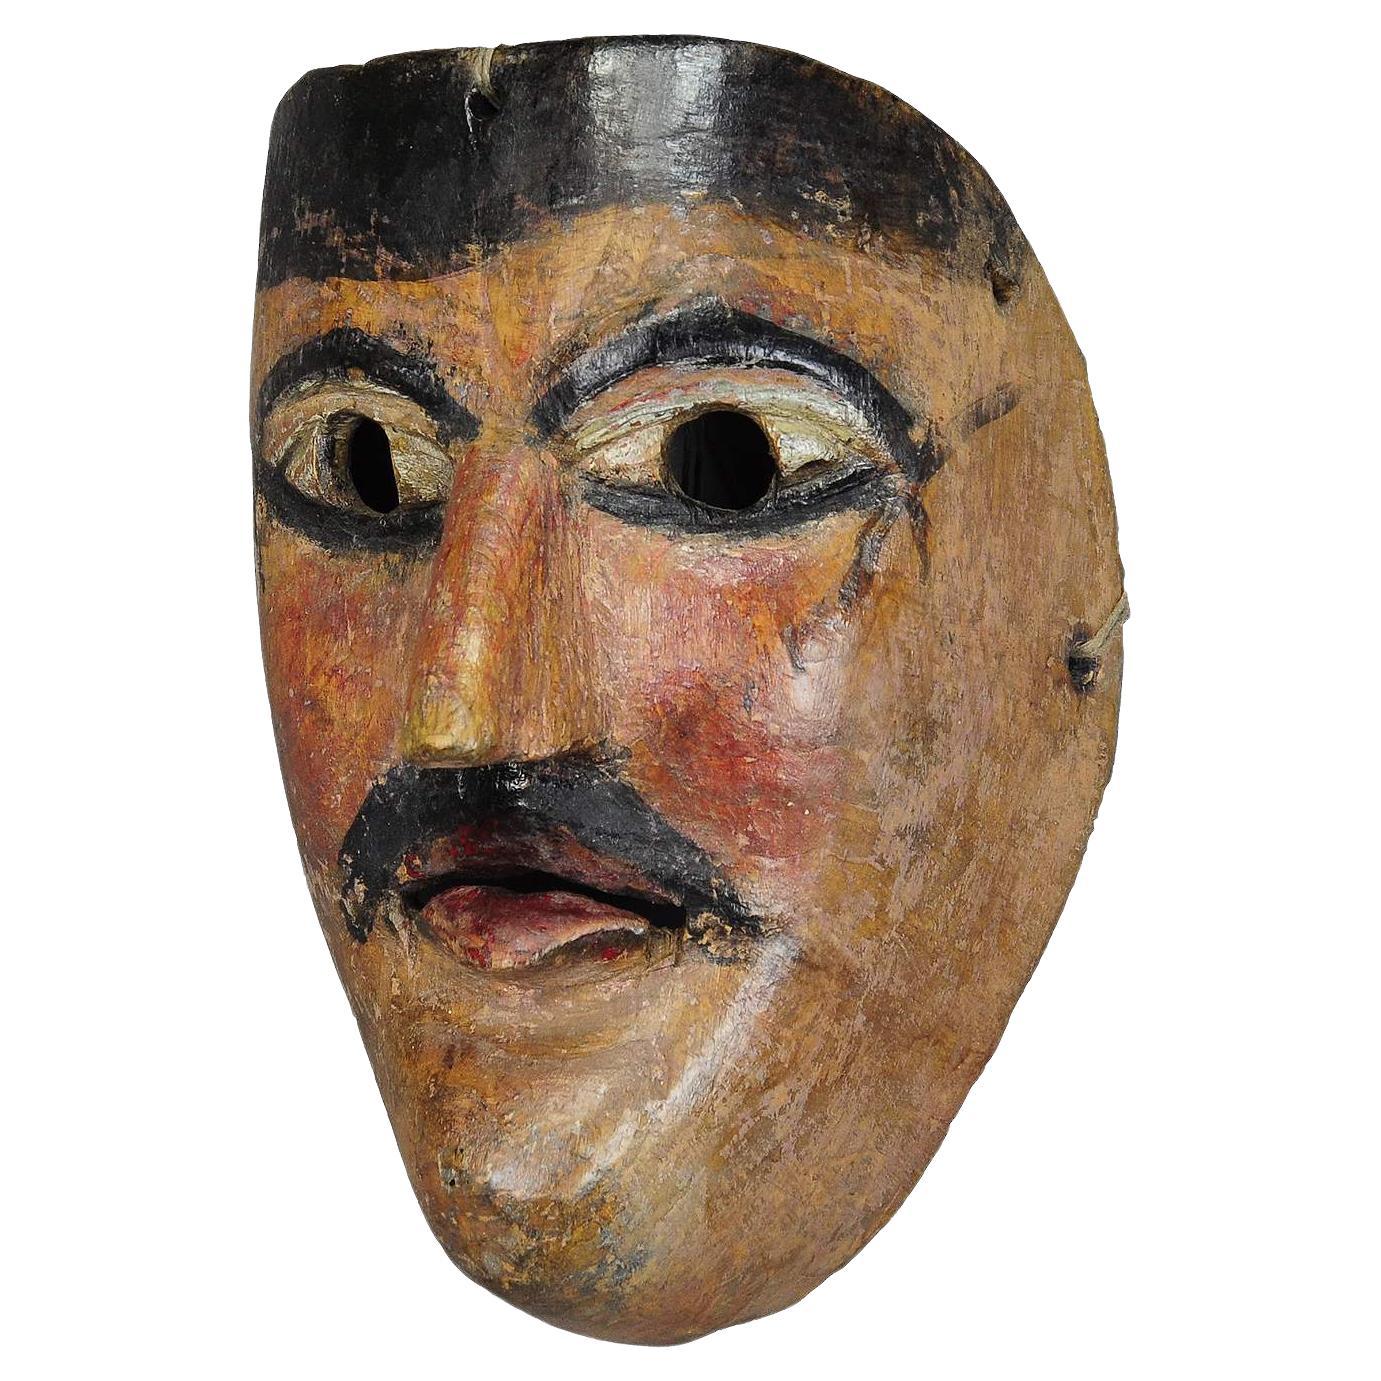 Joli masque de carnaval tyrolien Fasnet sculpté et peint